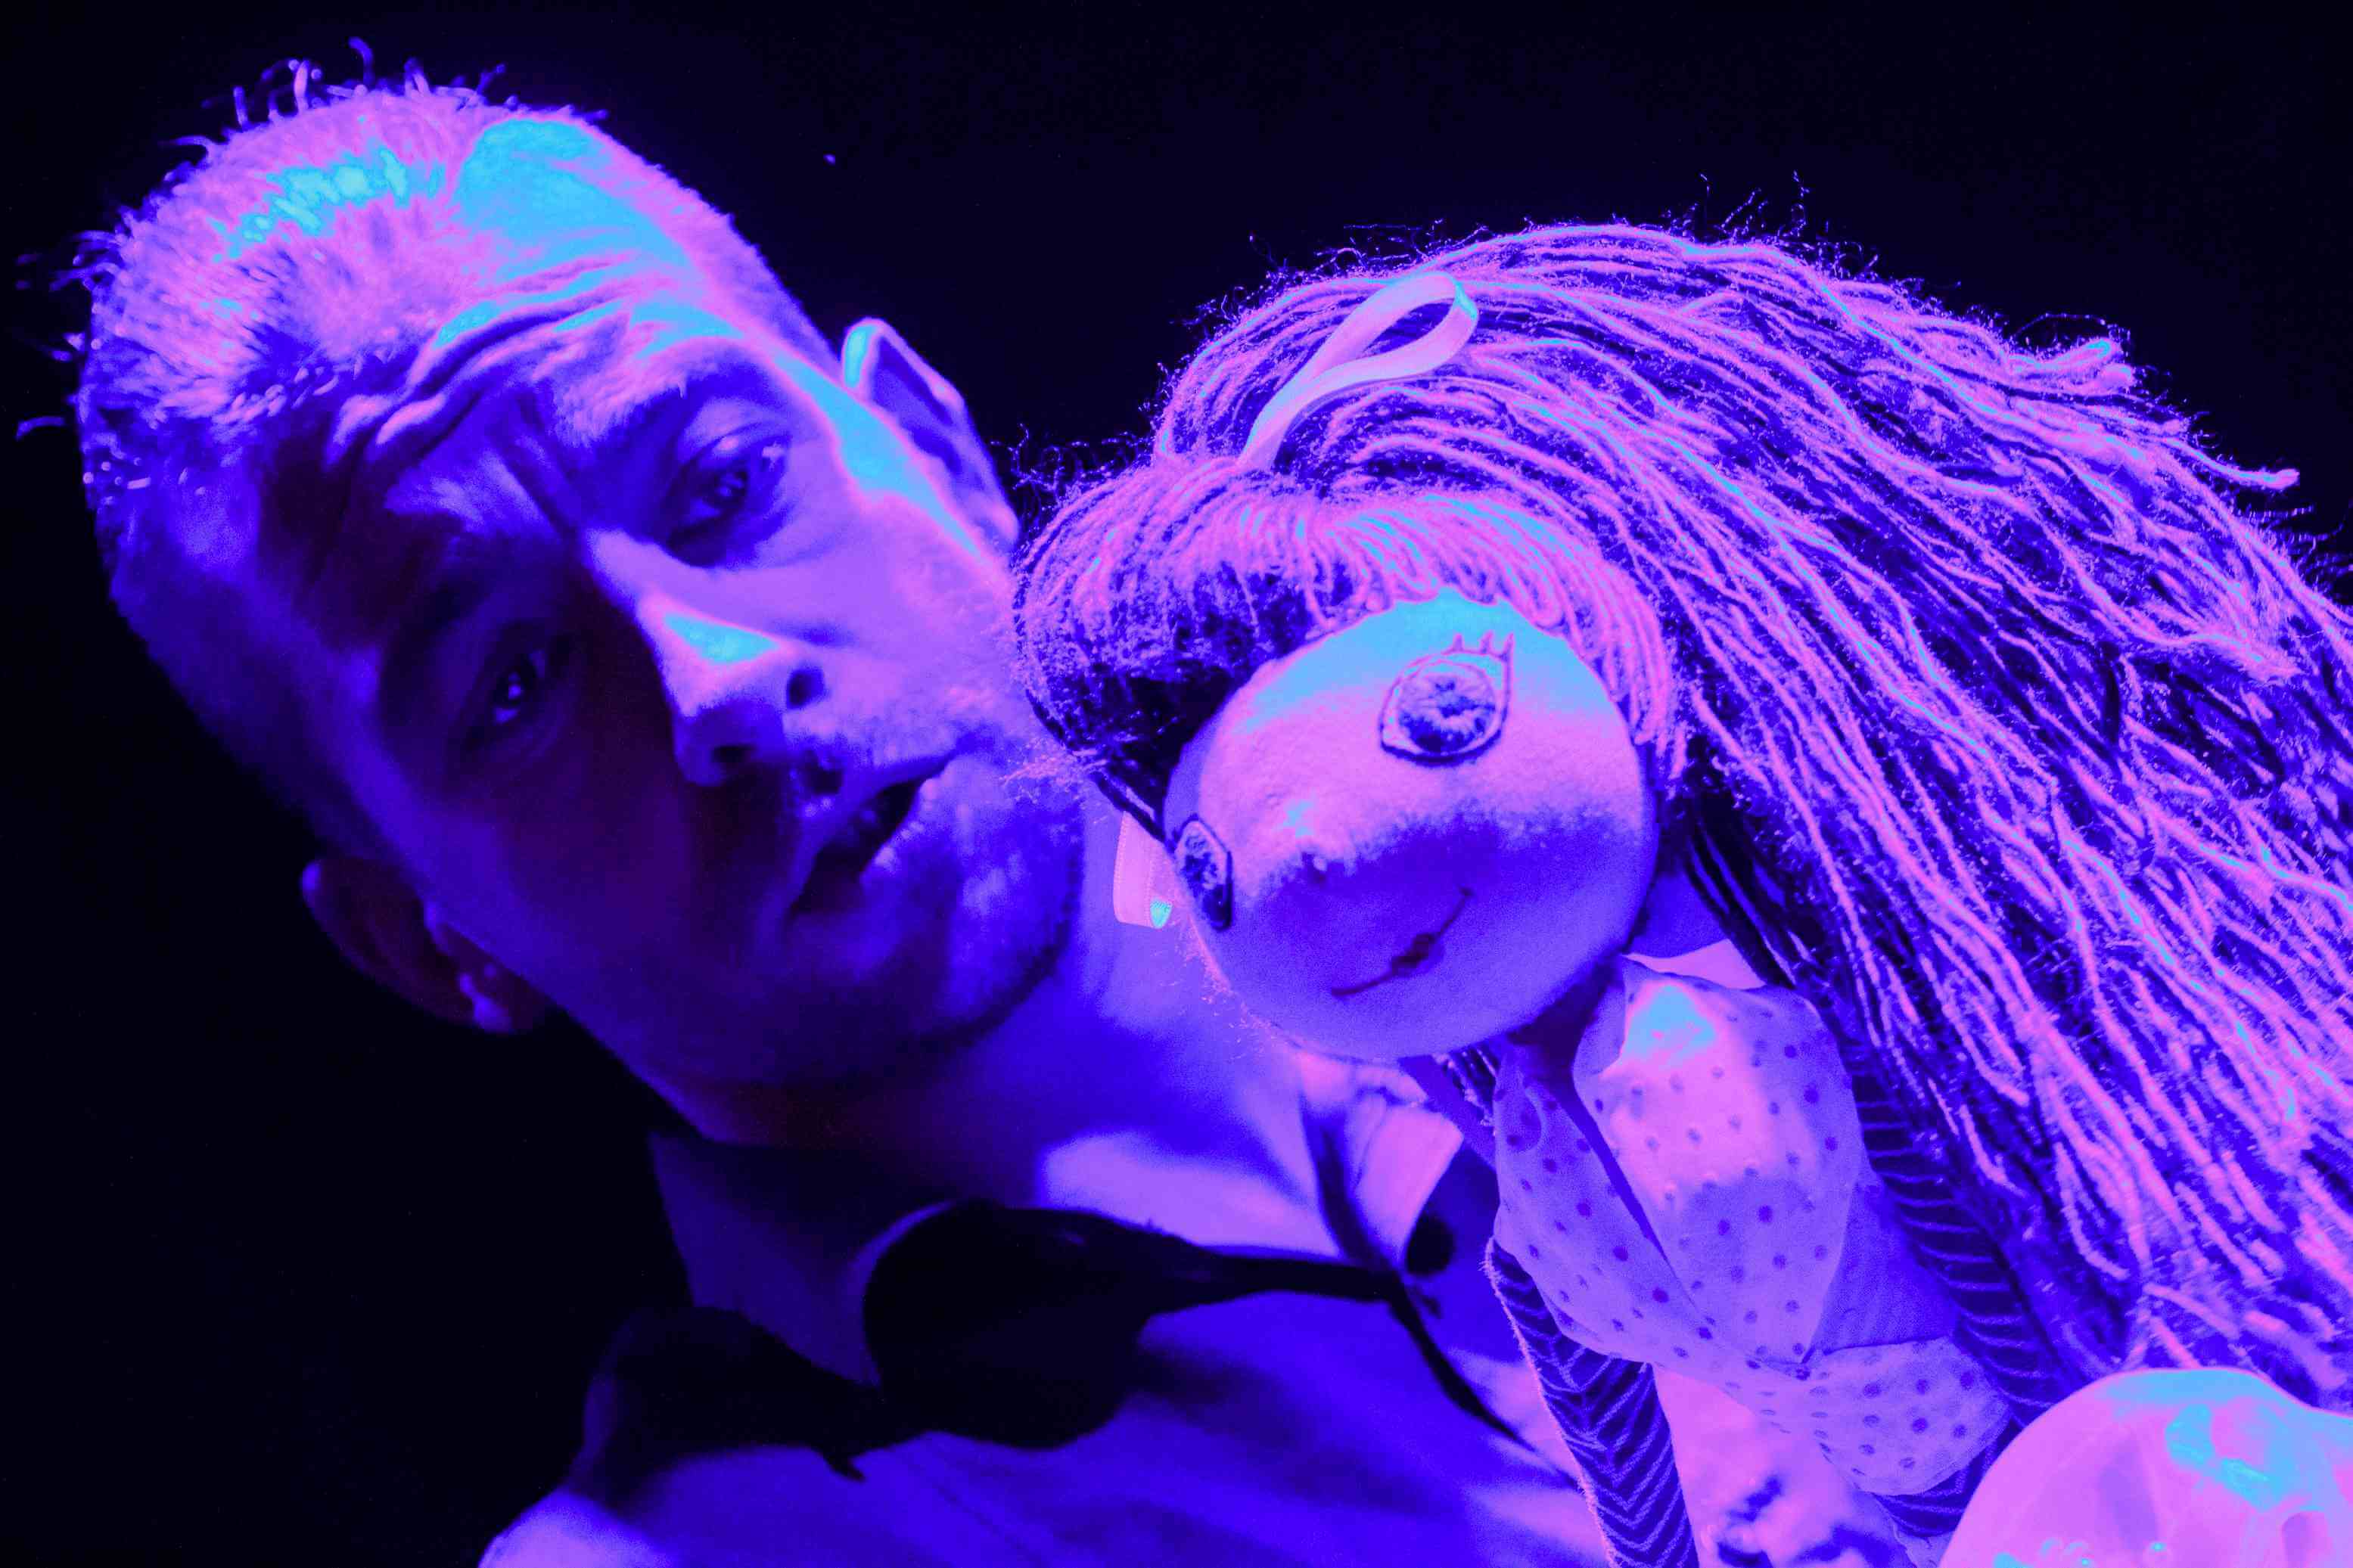 mężczyzna animuje lalkę, lalka ma jasną sukienkę i niebieskie włosy, zbliżenie na lalkę, widać ją od pasa w górę, czarne tło, pada intensywne fioletowe światło